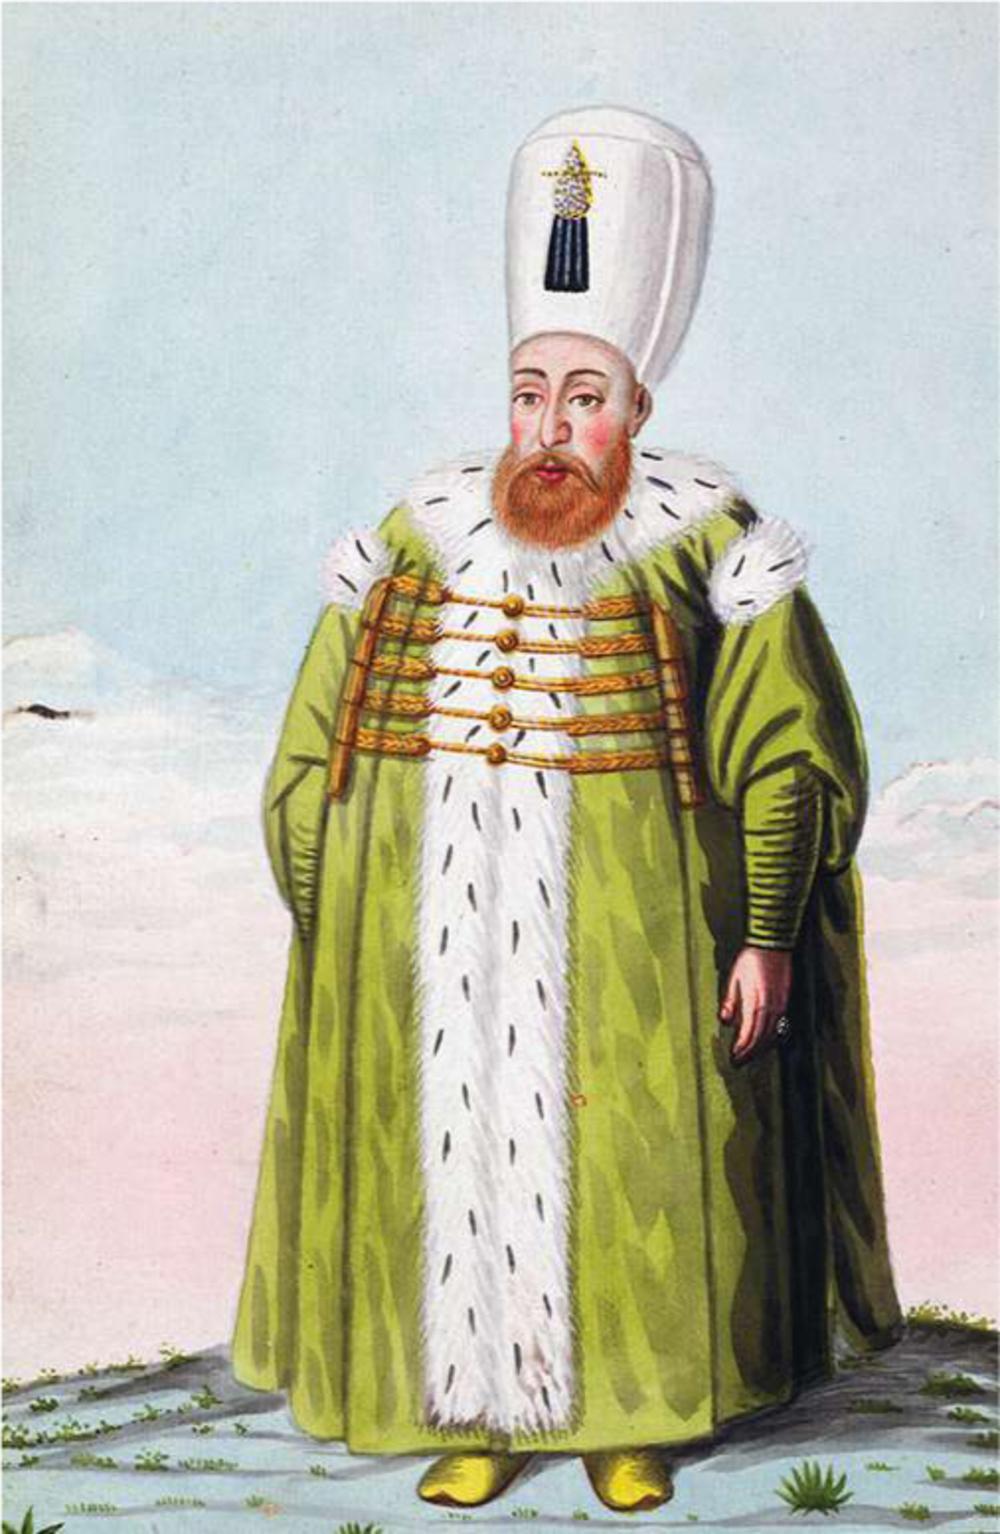 Postuum portret van Mustafa I uit 1808 door John Young, een Britse schilder (1755-1825), in een reeks portretten van de heersers over Turkije van de stichting van de monarchie tot 1815.